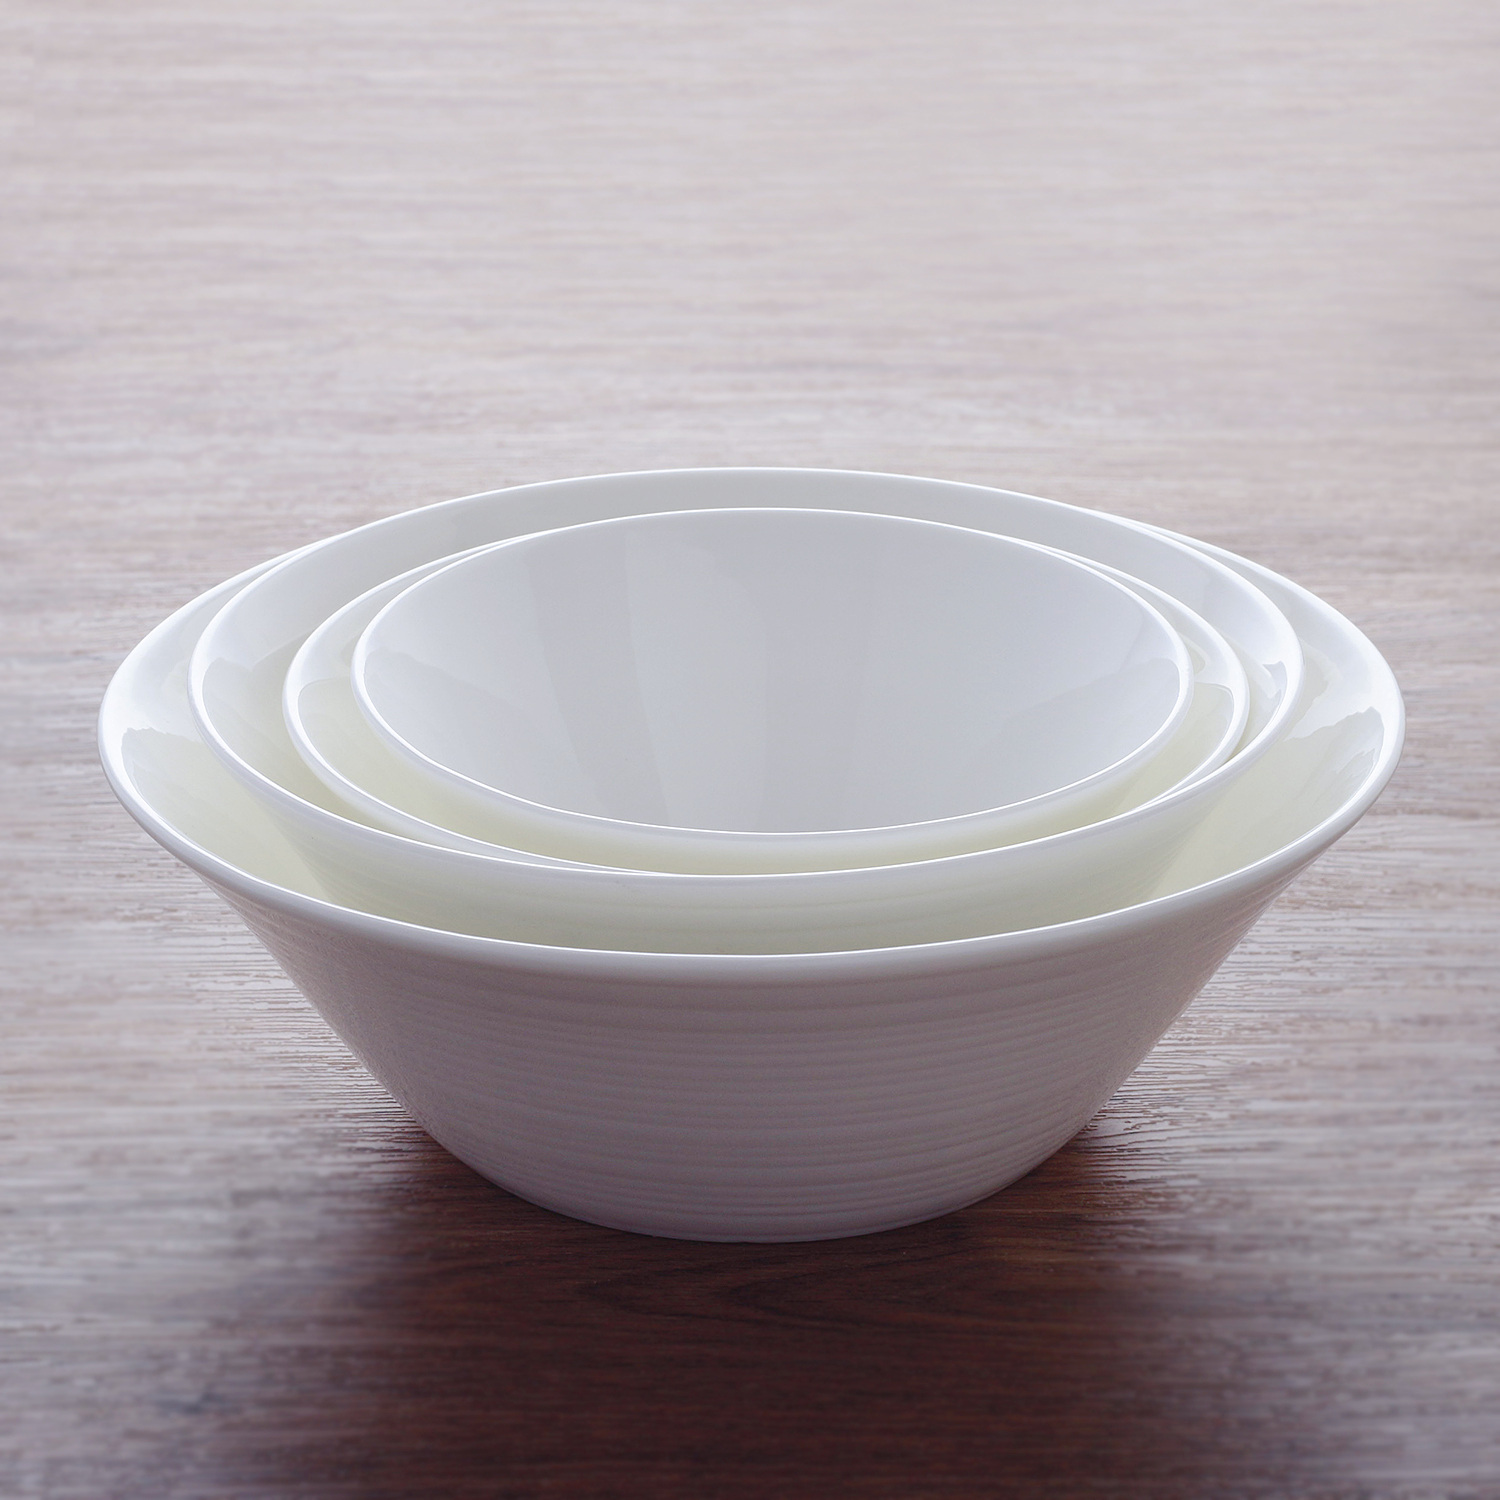 希信系列骨瓷碗家用饭碗纯色釉下彩条纹碗陶瓷大汤碗圆形面碗